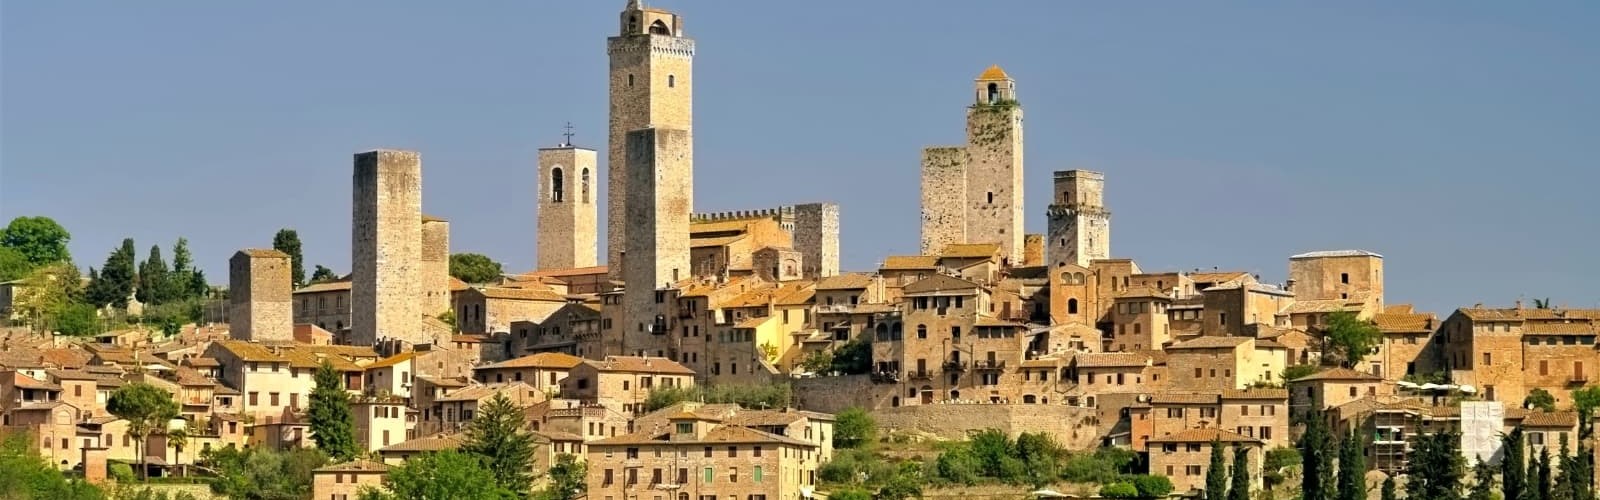 San Gimignano i Toscana i Italien